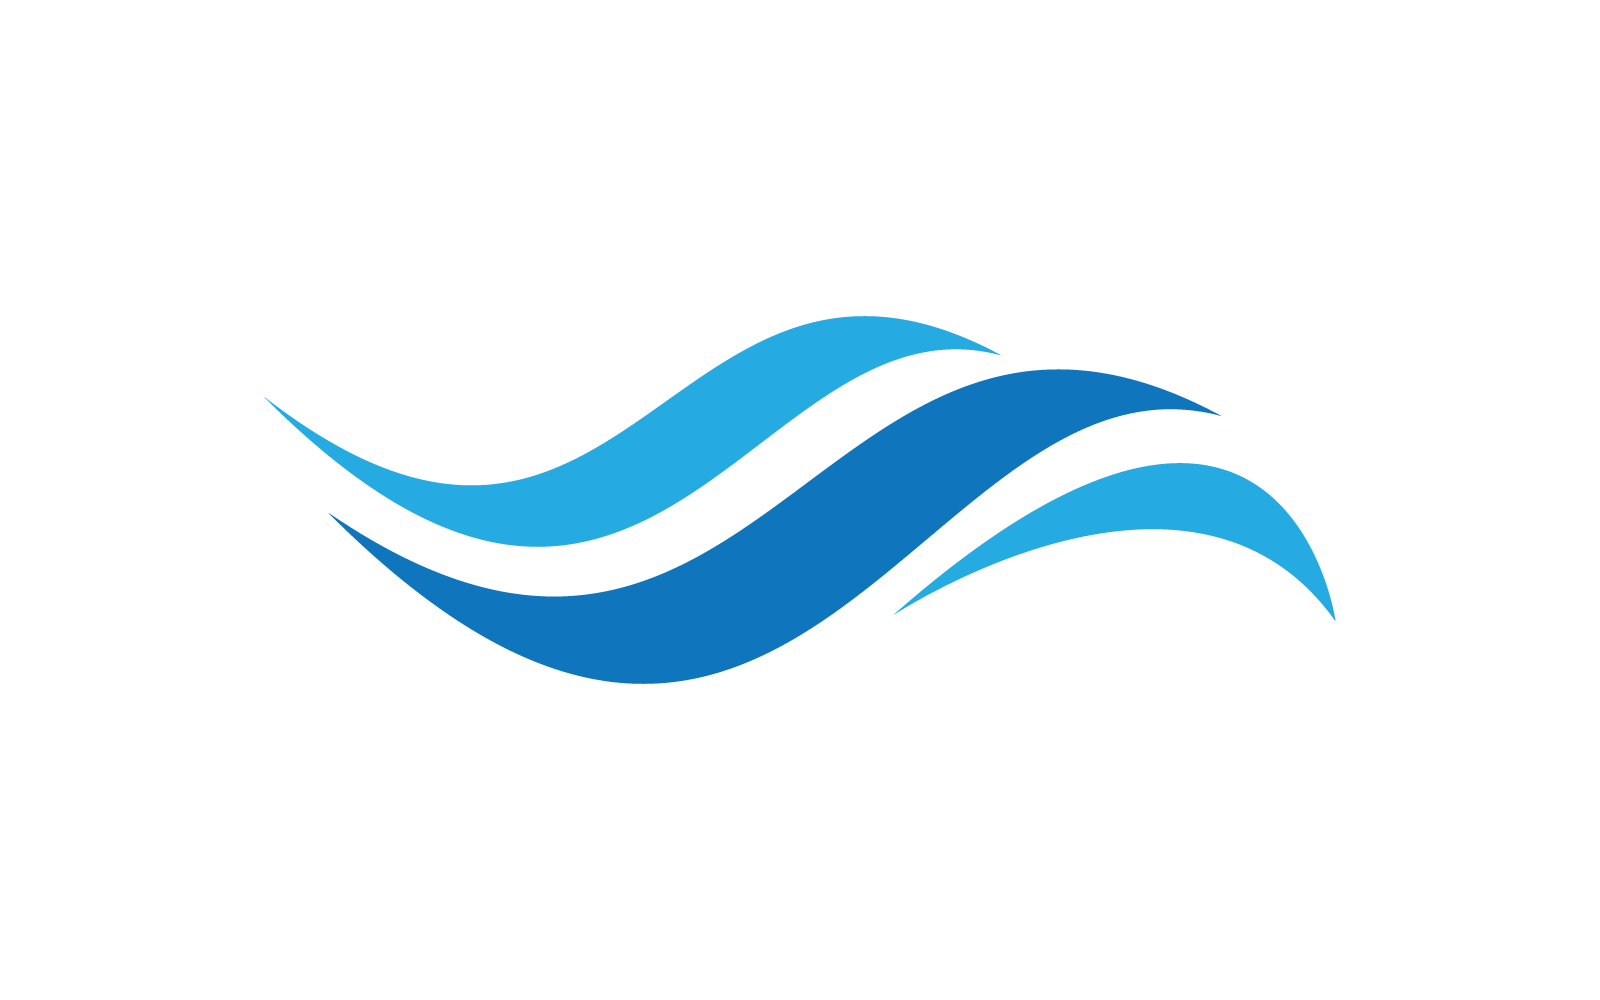 Water Wave ilustracja logo wektor płaska konstrukcja